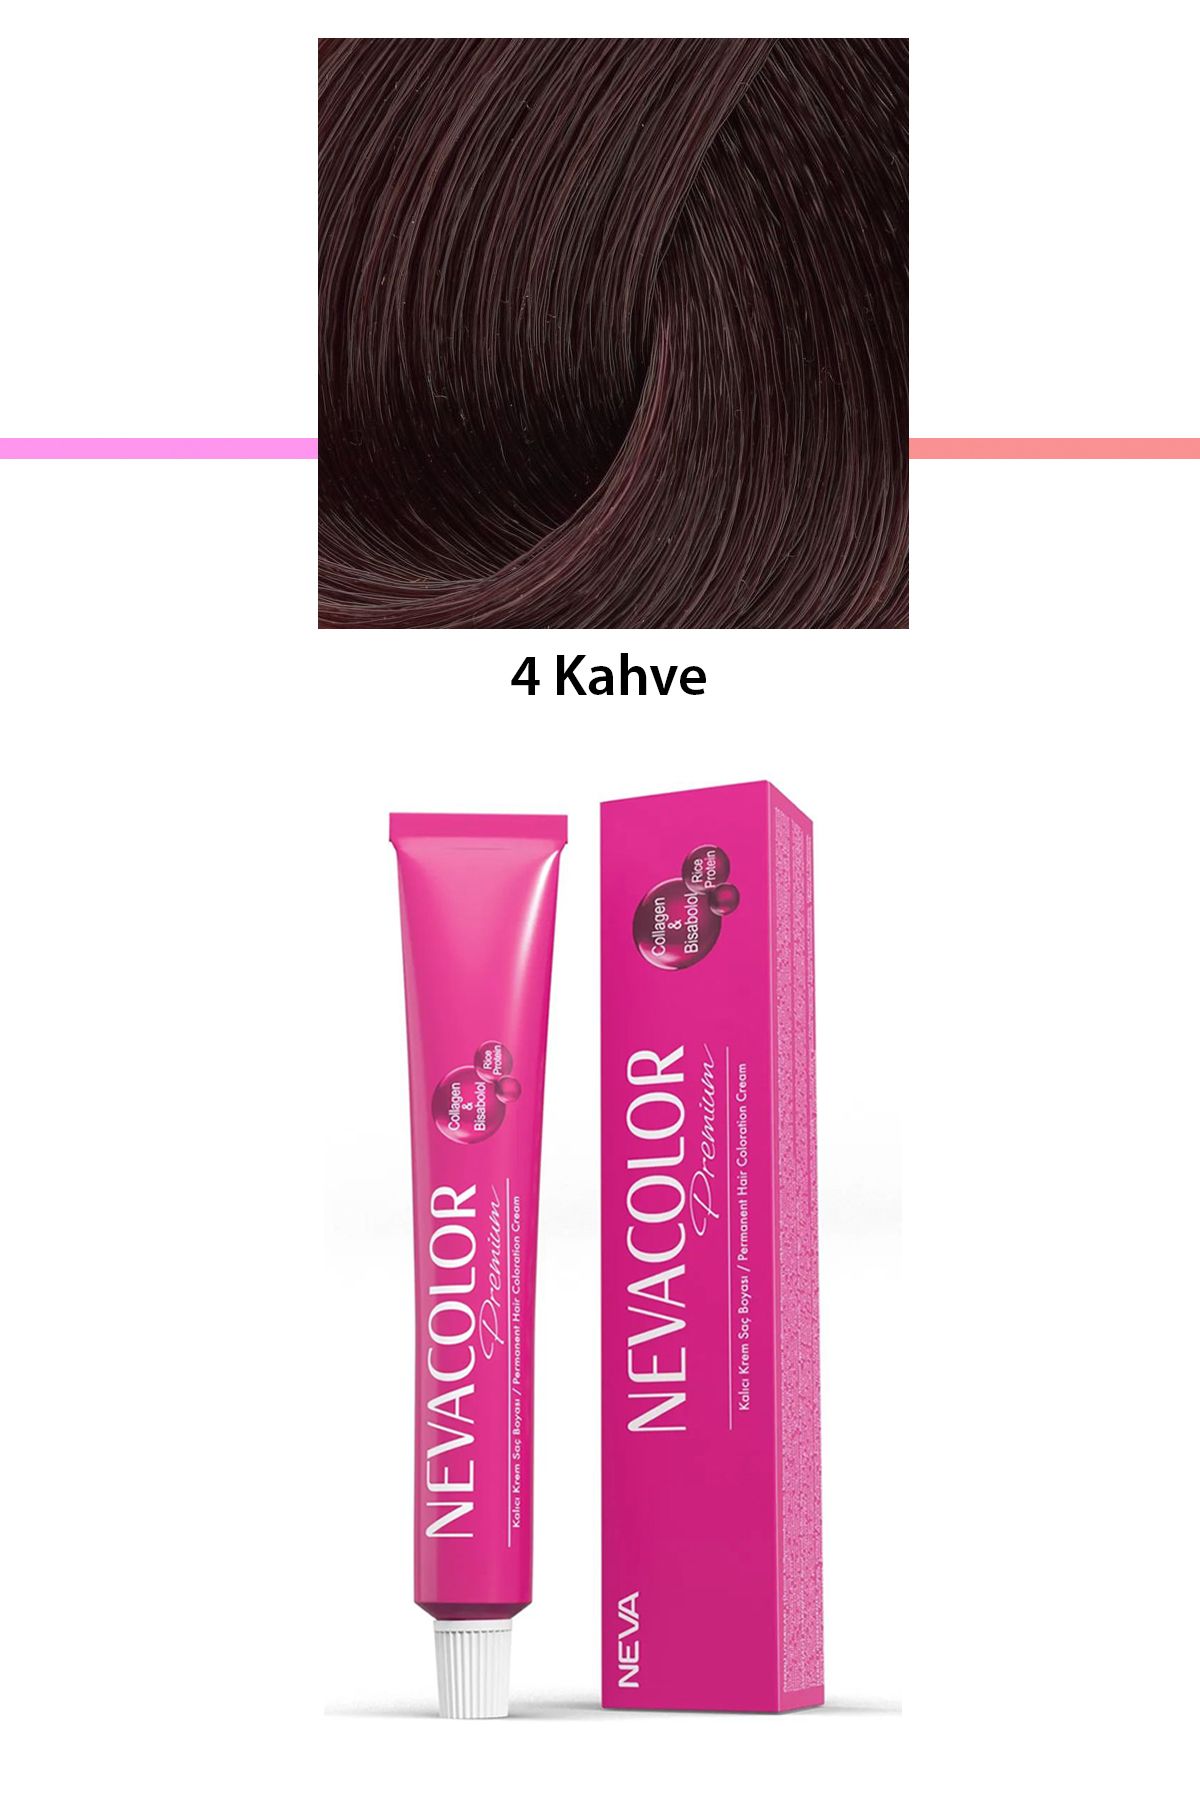 Neva Color Premium 4 Kahve - Kalıcı Krem Saç Boyası 50 g Tüp